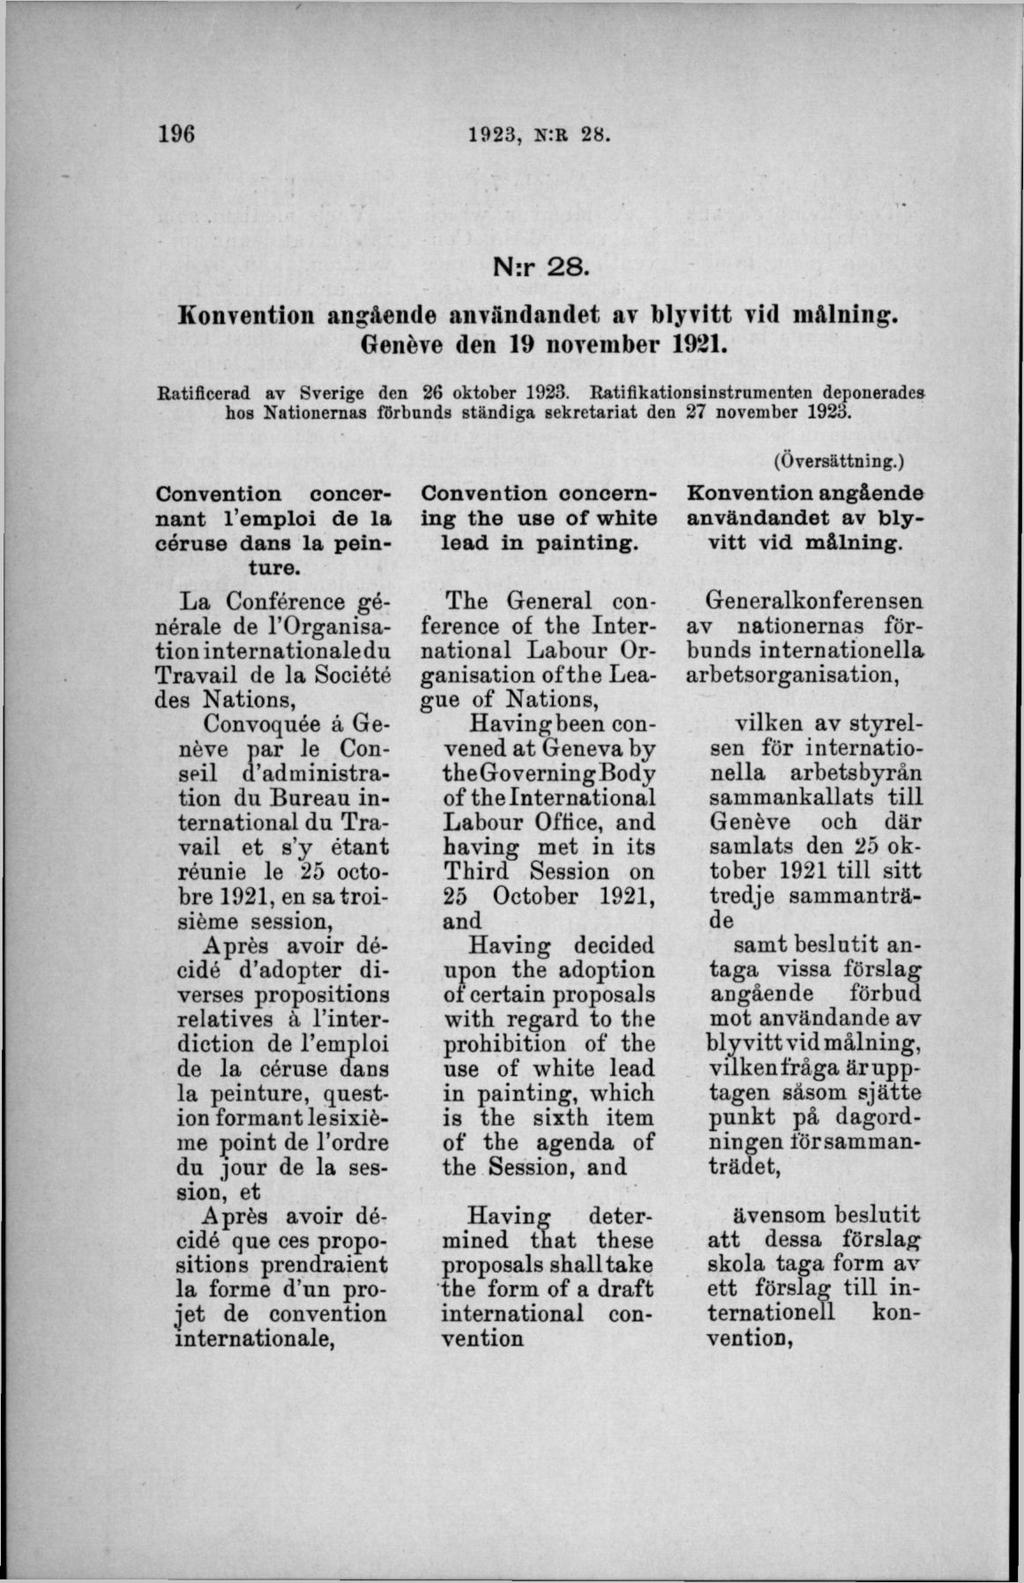 N:r 28. Konvention angående användandet av blyvitt vid målning. Genéve den 19 november 1921. Ratificerad av Sverige den 26 oktober 1923.